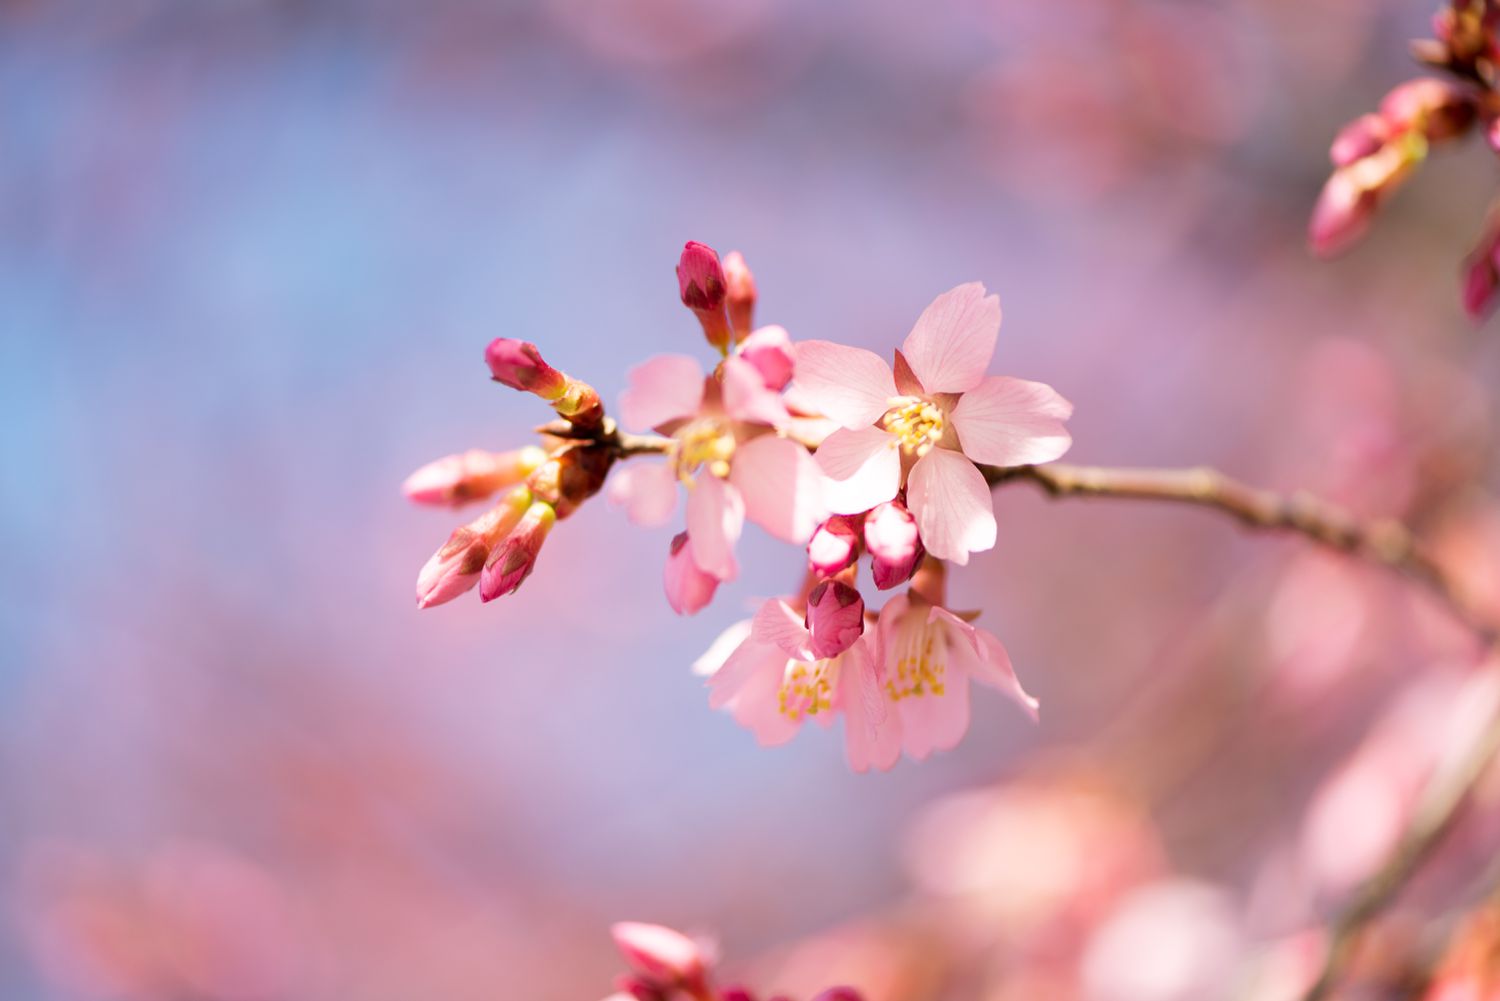 Süßkirschbaumzweig mit kleinen rosa Blüten und Knospen in Nahaufnahme